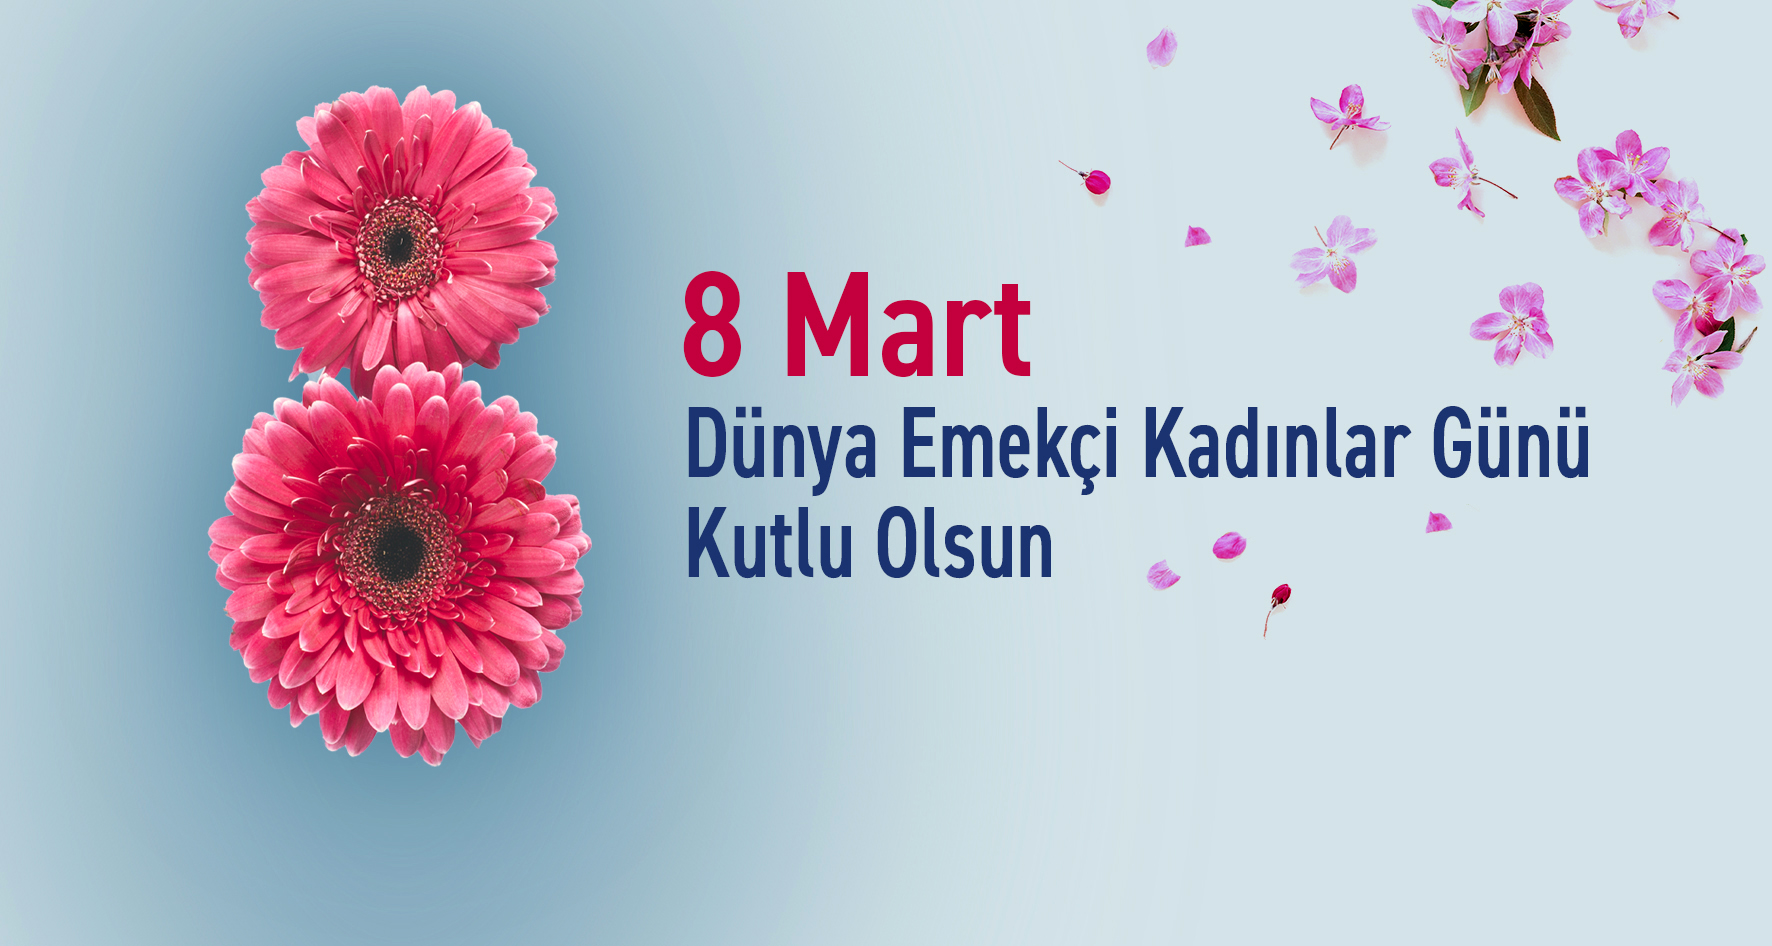 “8 Mart Dünya Emekçi Kadınlar Günü Kutlu Olsun”